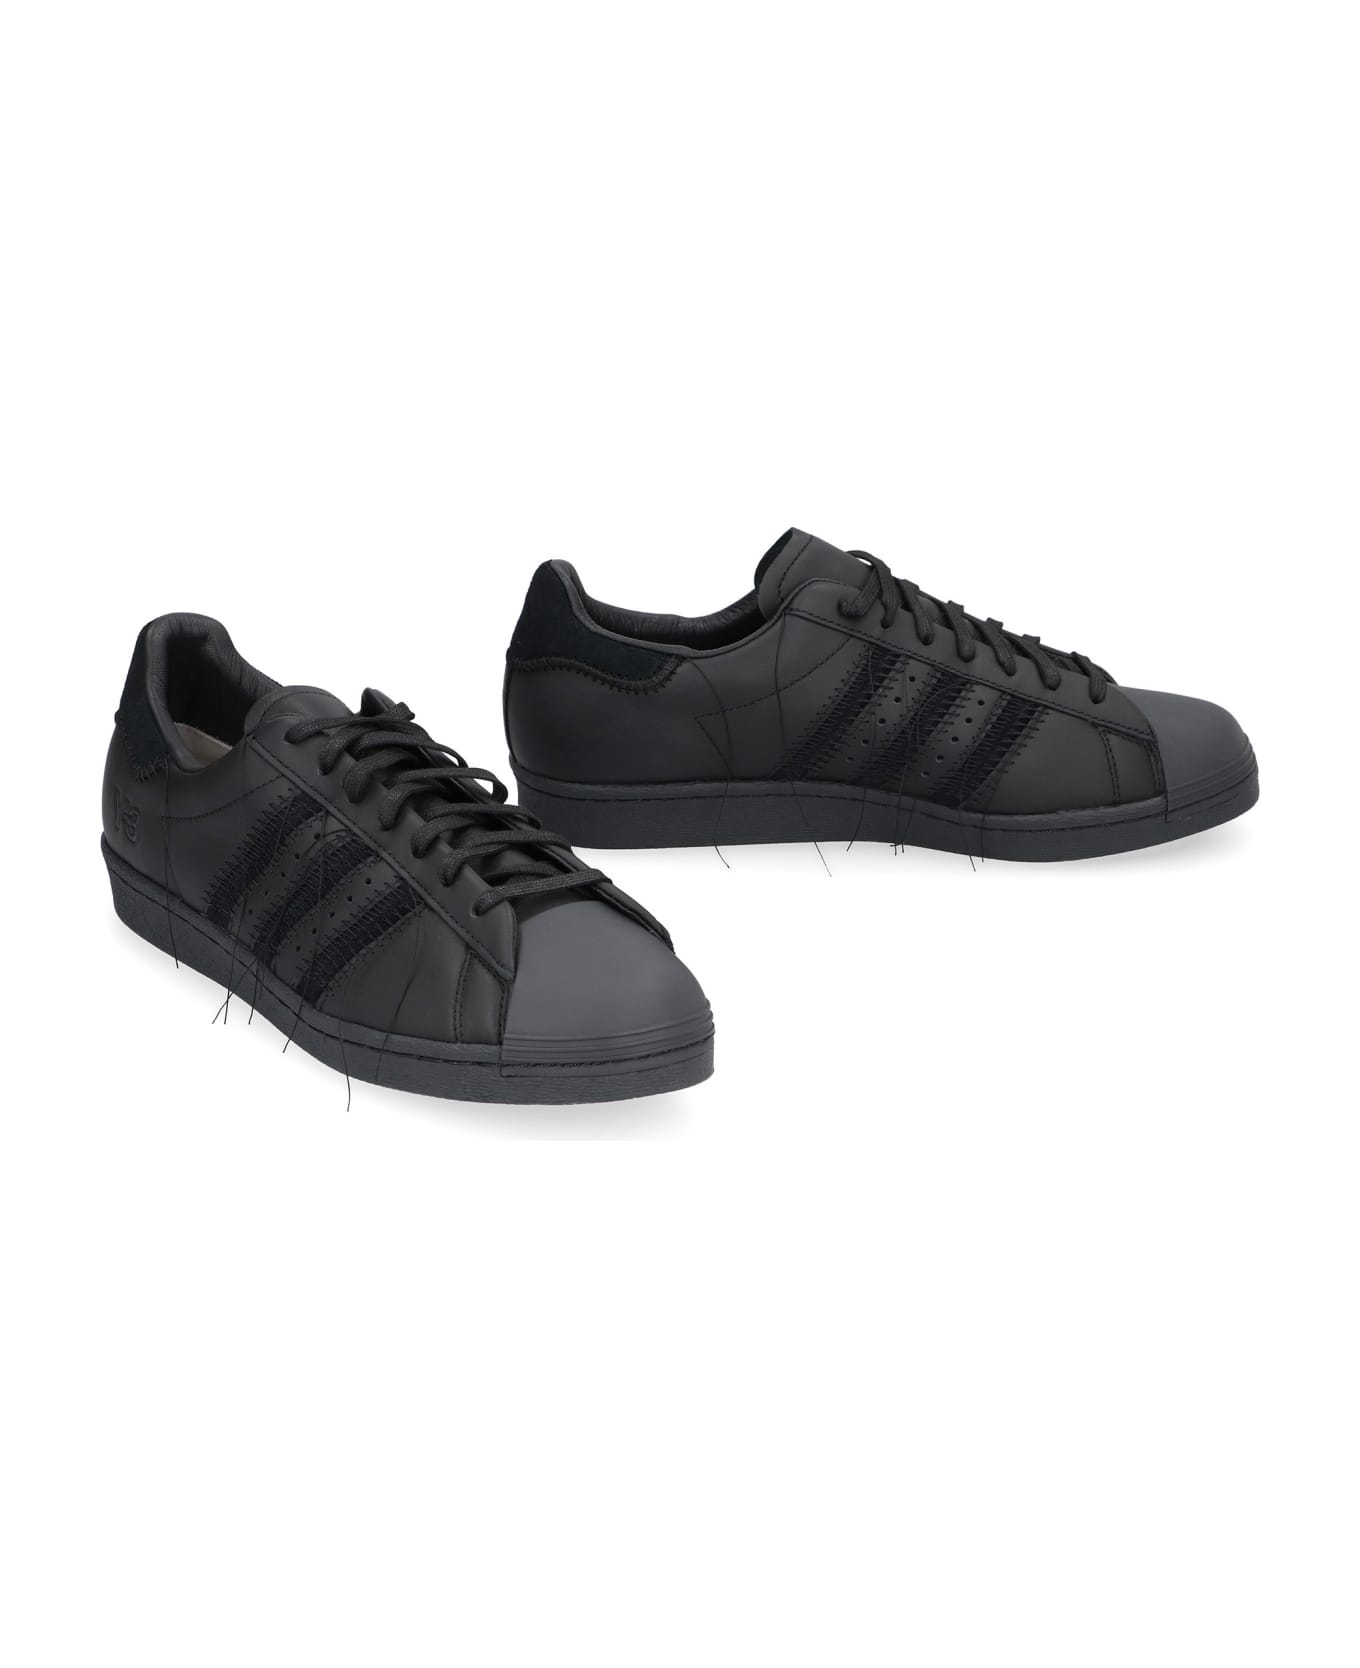 Y-3 Superstar Leather Low-top Sneakers - black スニーカー